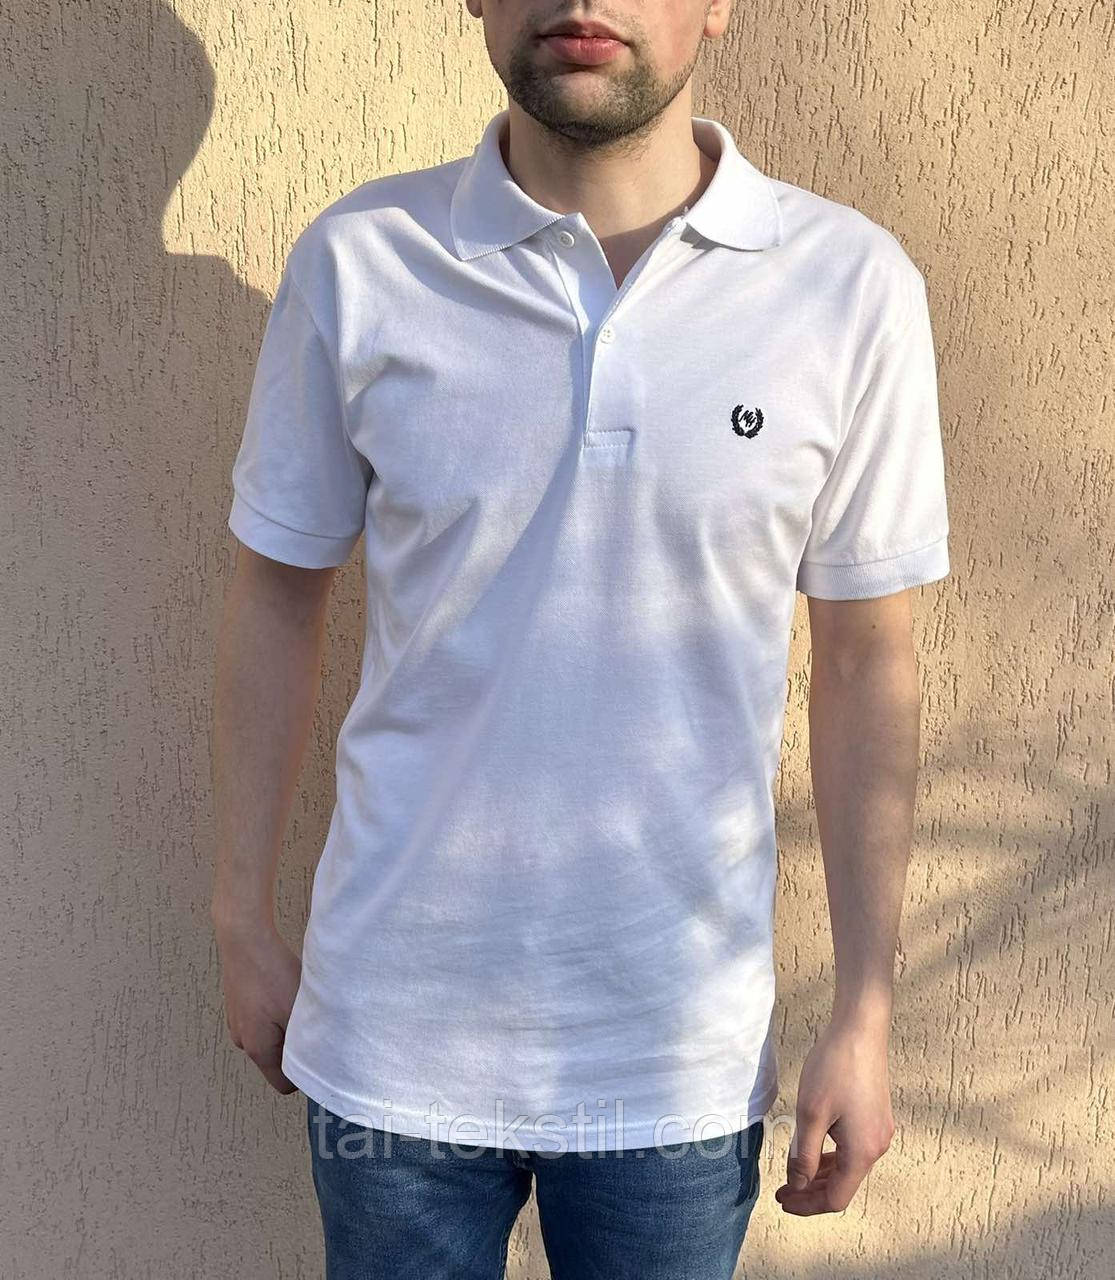 Чоловіча футболка - поло гарноі якості коттон 100% виробництво Туреччина